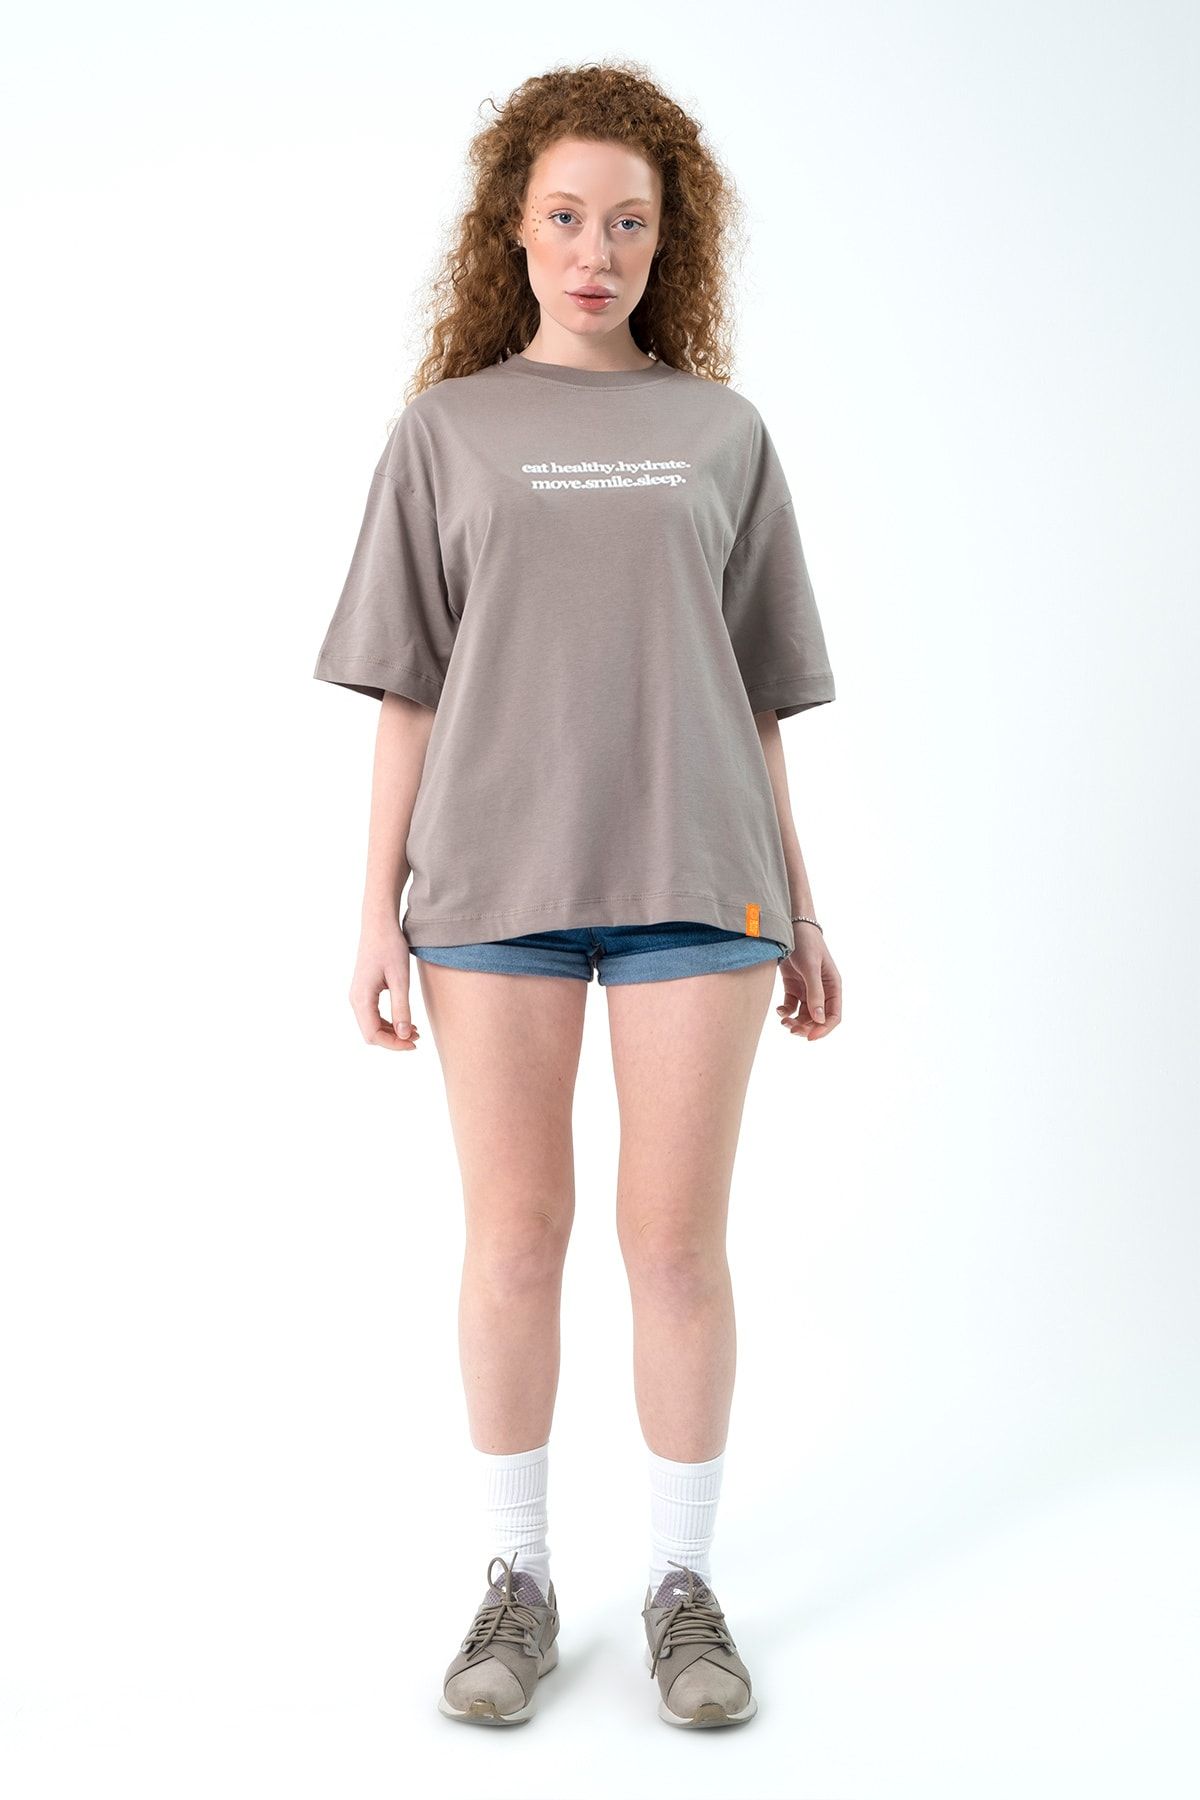 Eazy Co Eazy Taş Gri Eat Healthy Unisex Extra Oversize Baskılı Kısa Kollu T-shirt